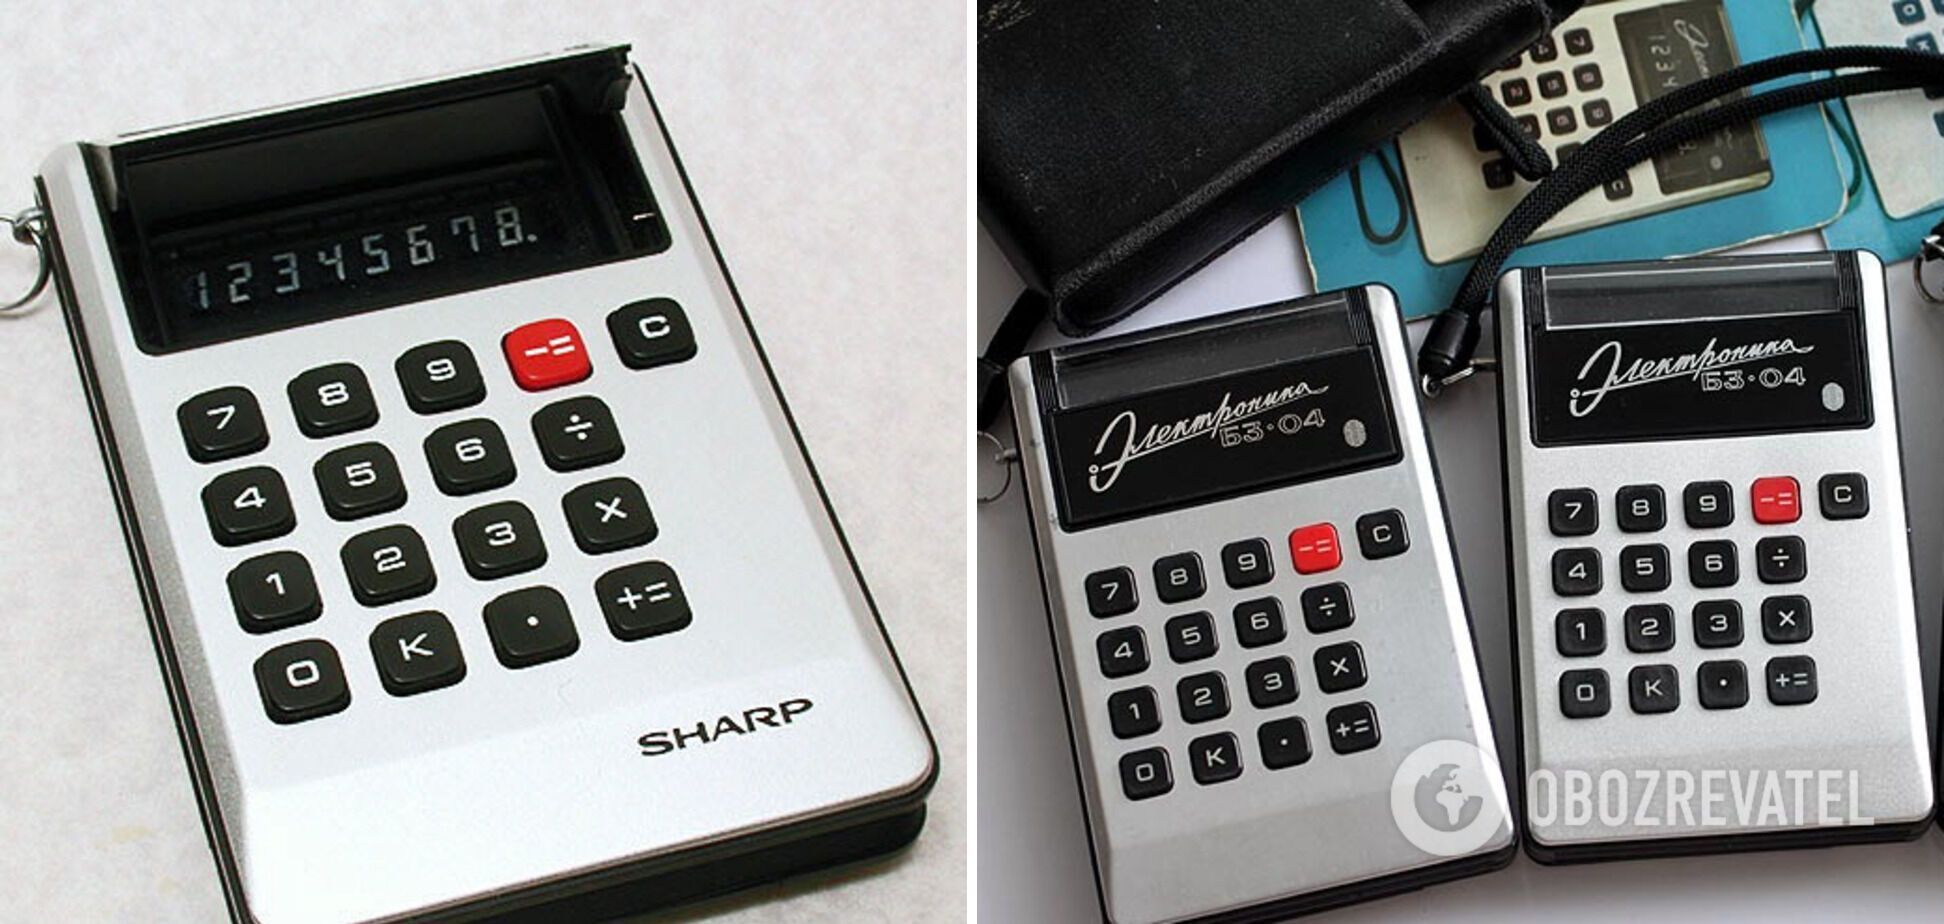 Японский калькулятор "Sharp EL-805" – слева, а советская "Электроника" – справа.